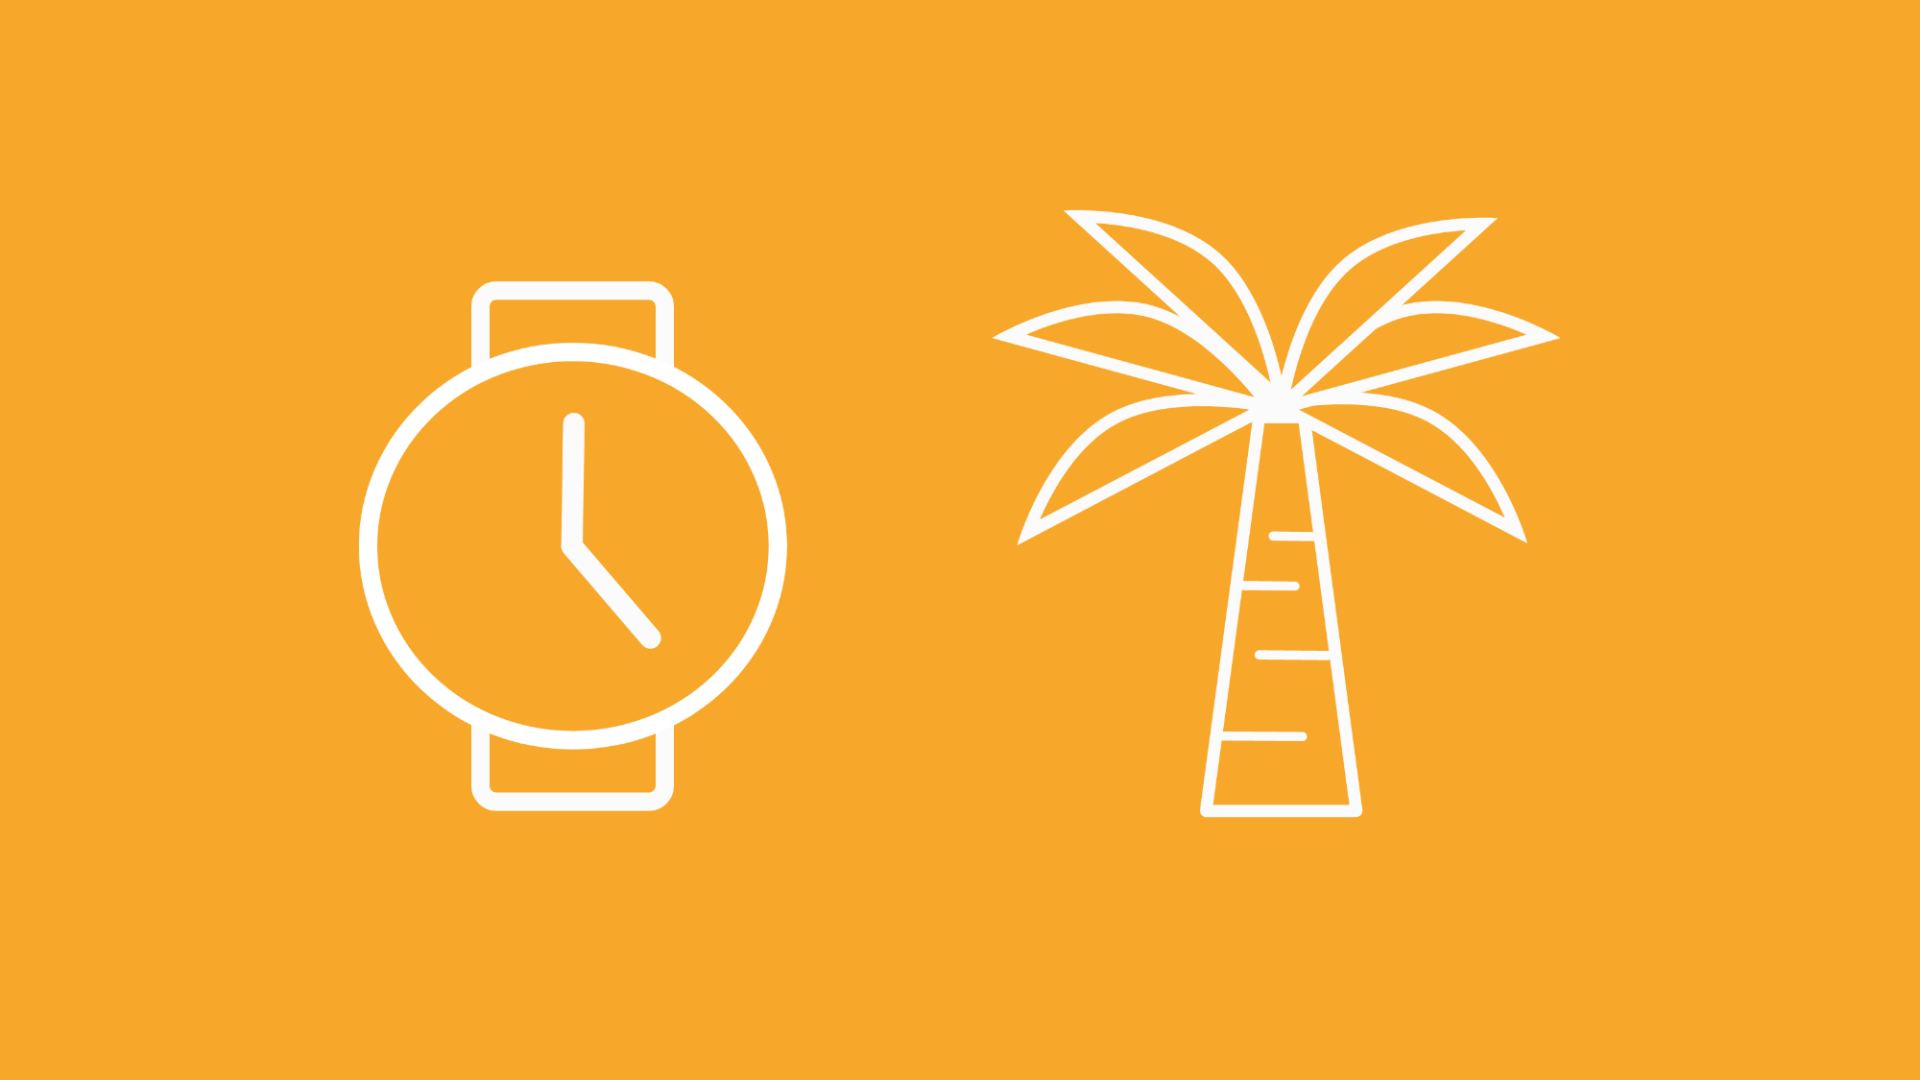 Zu sehen sind eine Uhr und eine Palme, welche die Versicherung im Urlaub darstellen sollen.